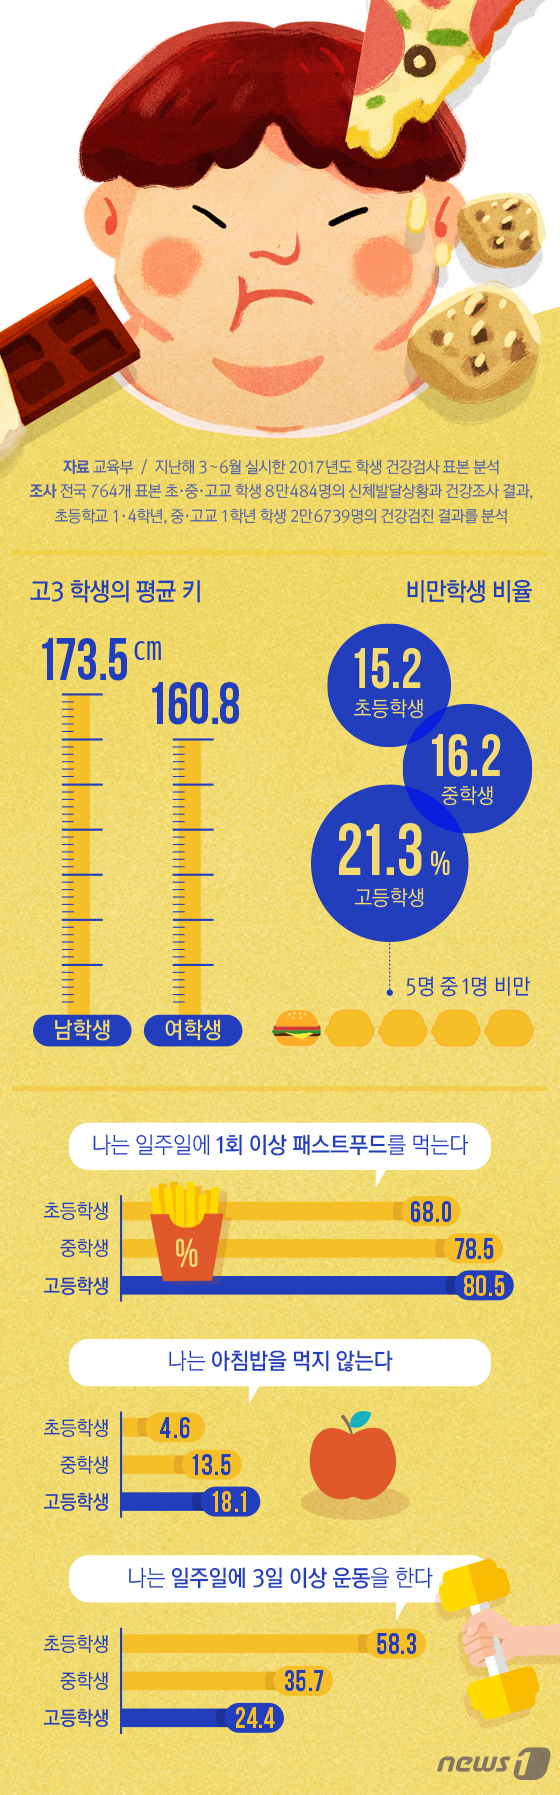 [그래픽뉴스] 고등학생 5명 중 1명은 비만